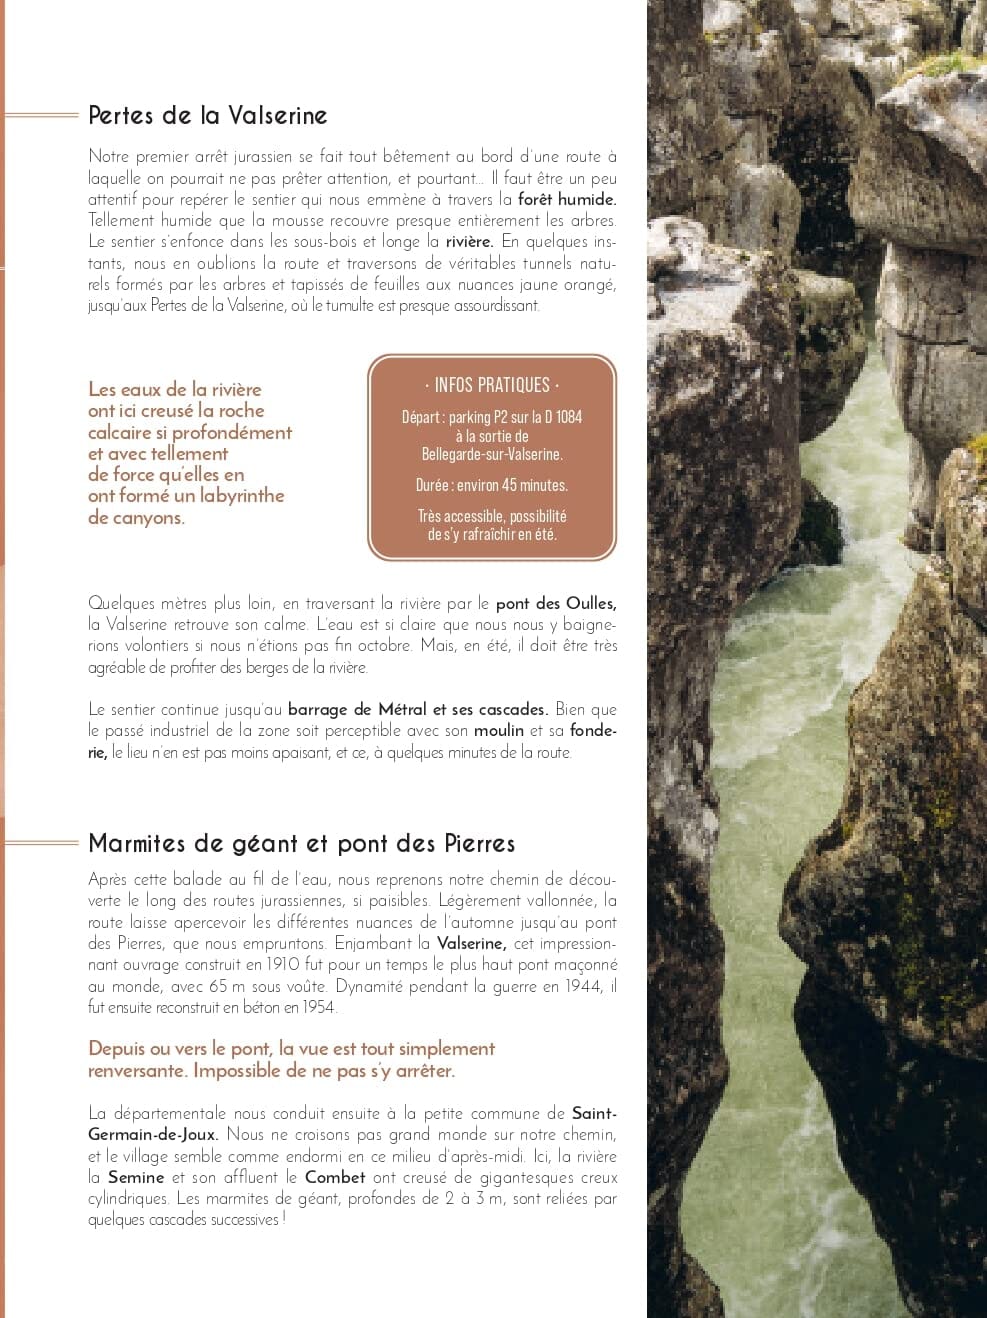 Guide de voyage - France : Road trips en van guide de voyage Dilibel 